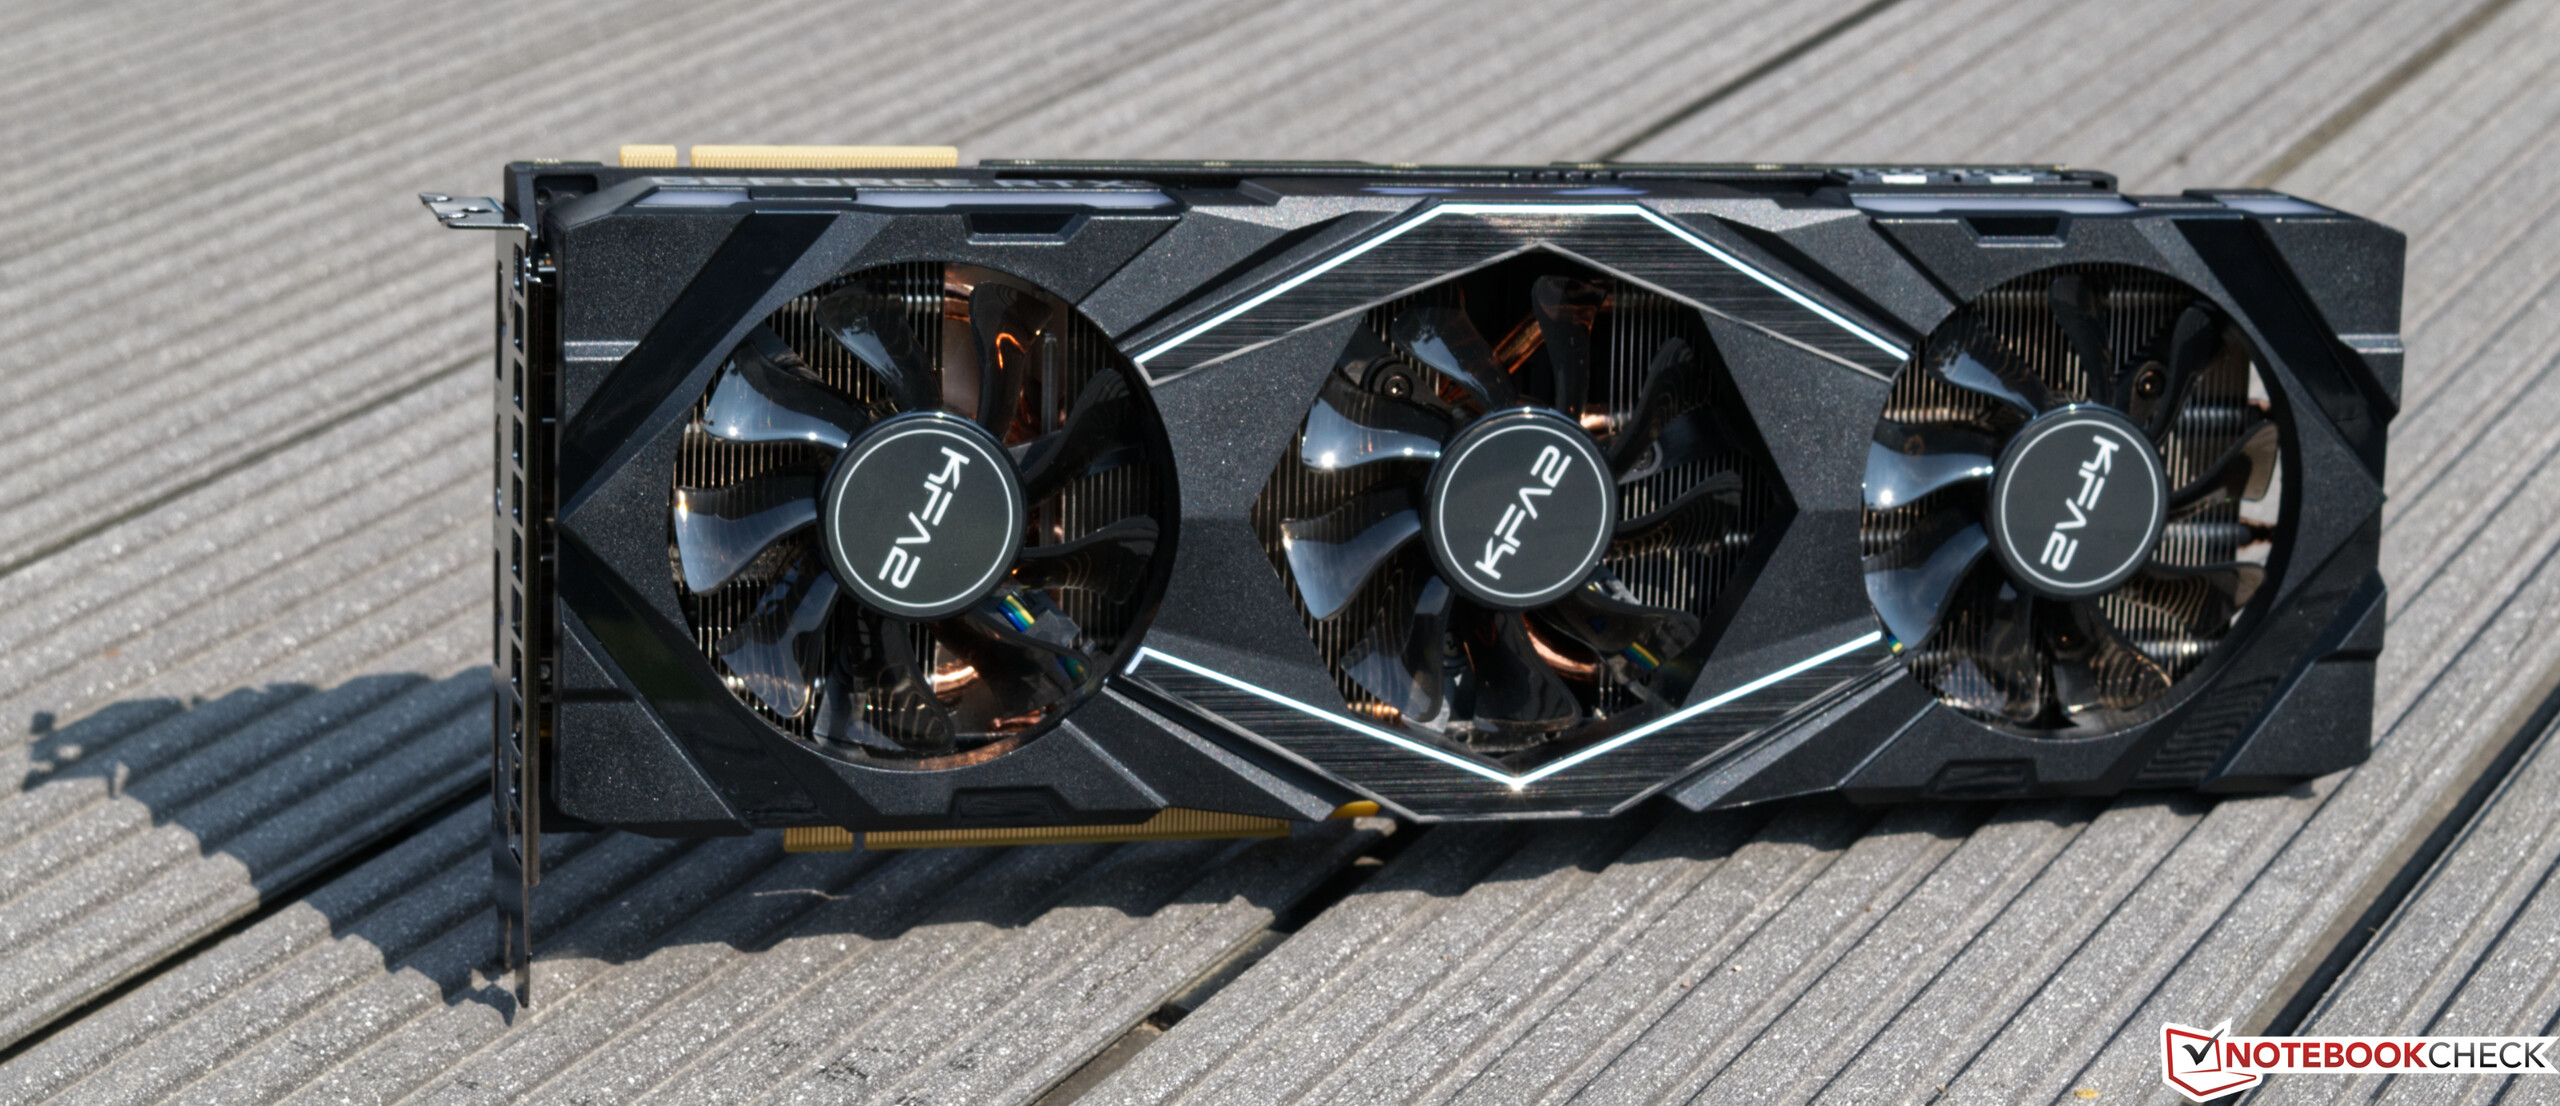 Review de GeForce 2080 Ti EX - GPU Nvidia de gama alta con una solución de refrigeración personalizada - Notebookcheck.org